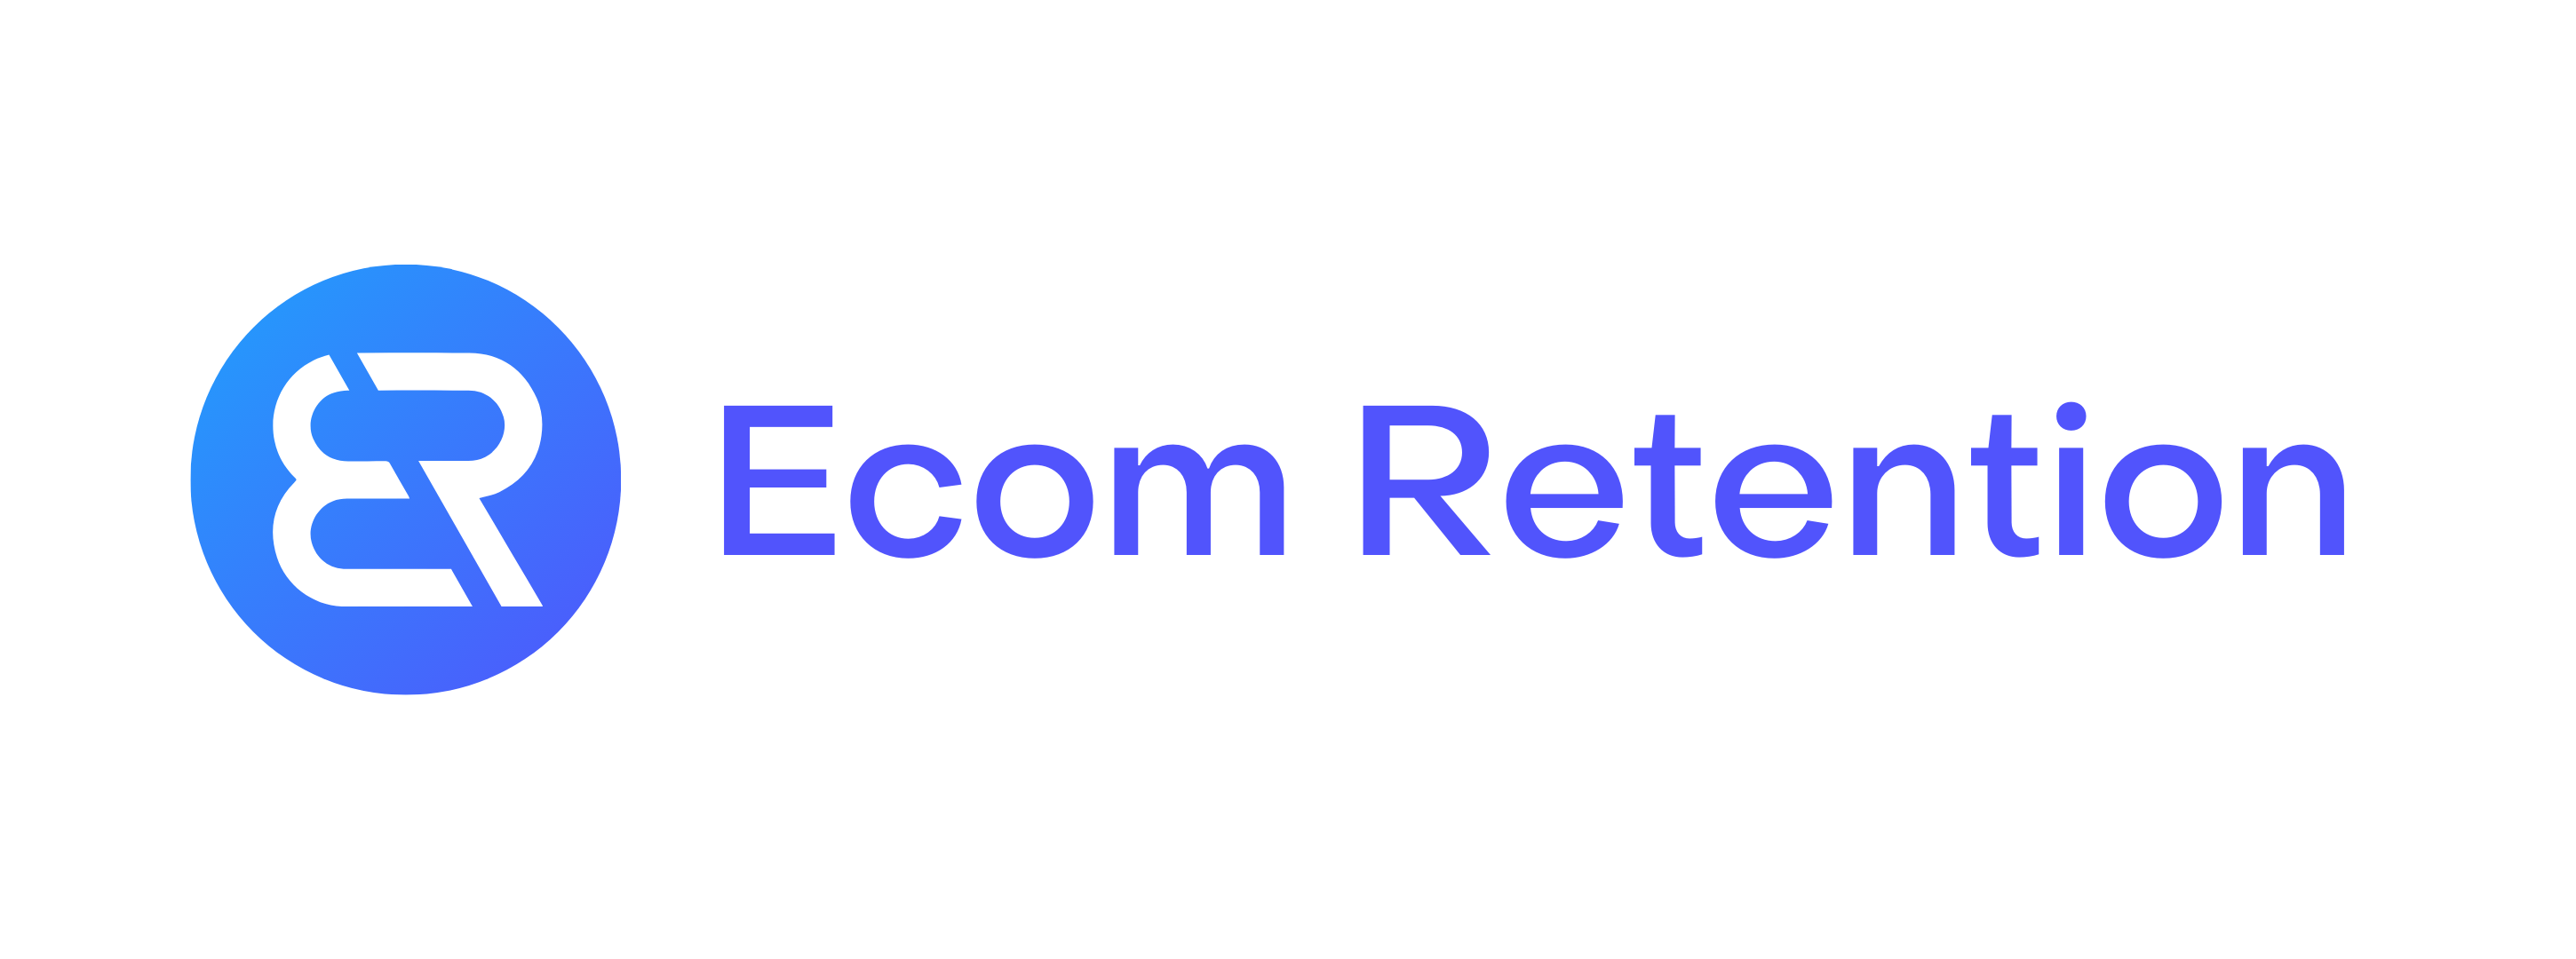 Ecom Retention Logo